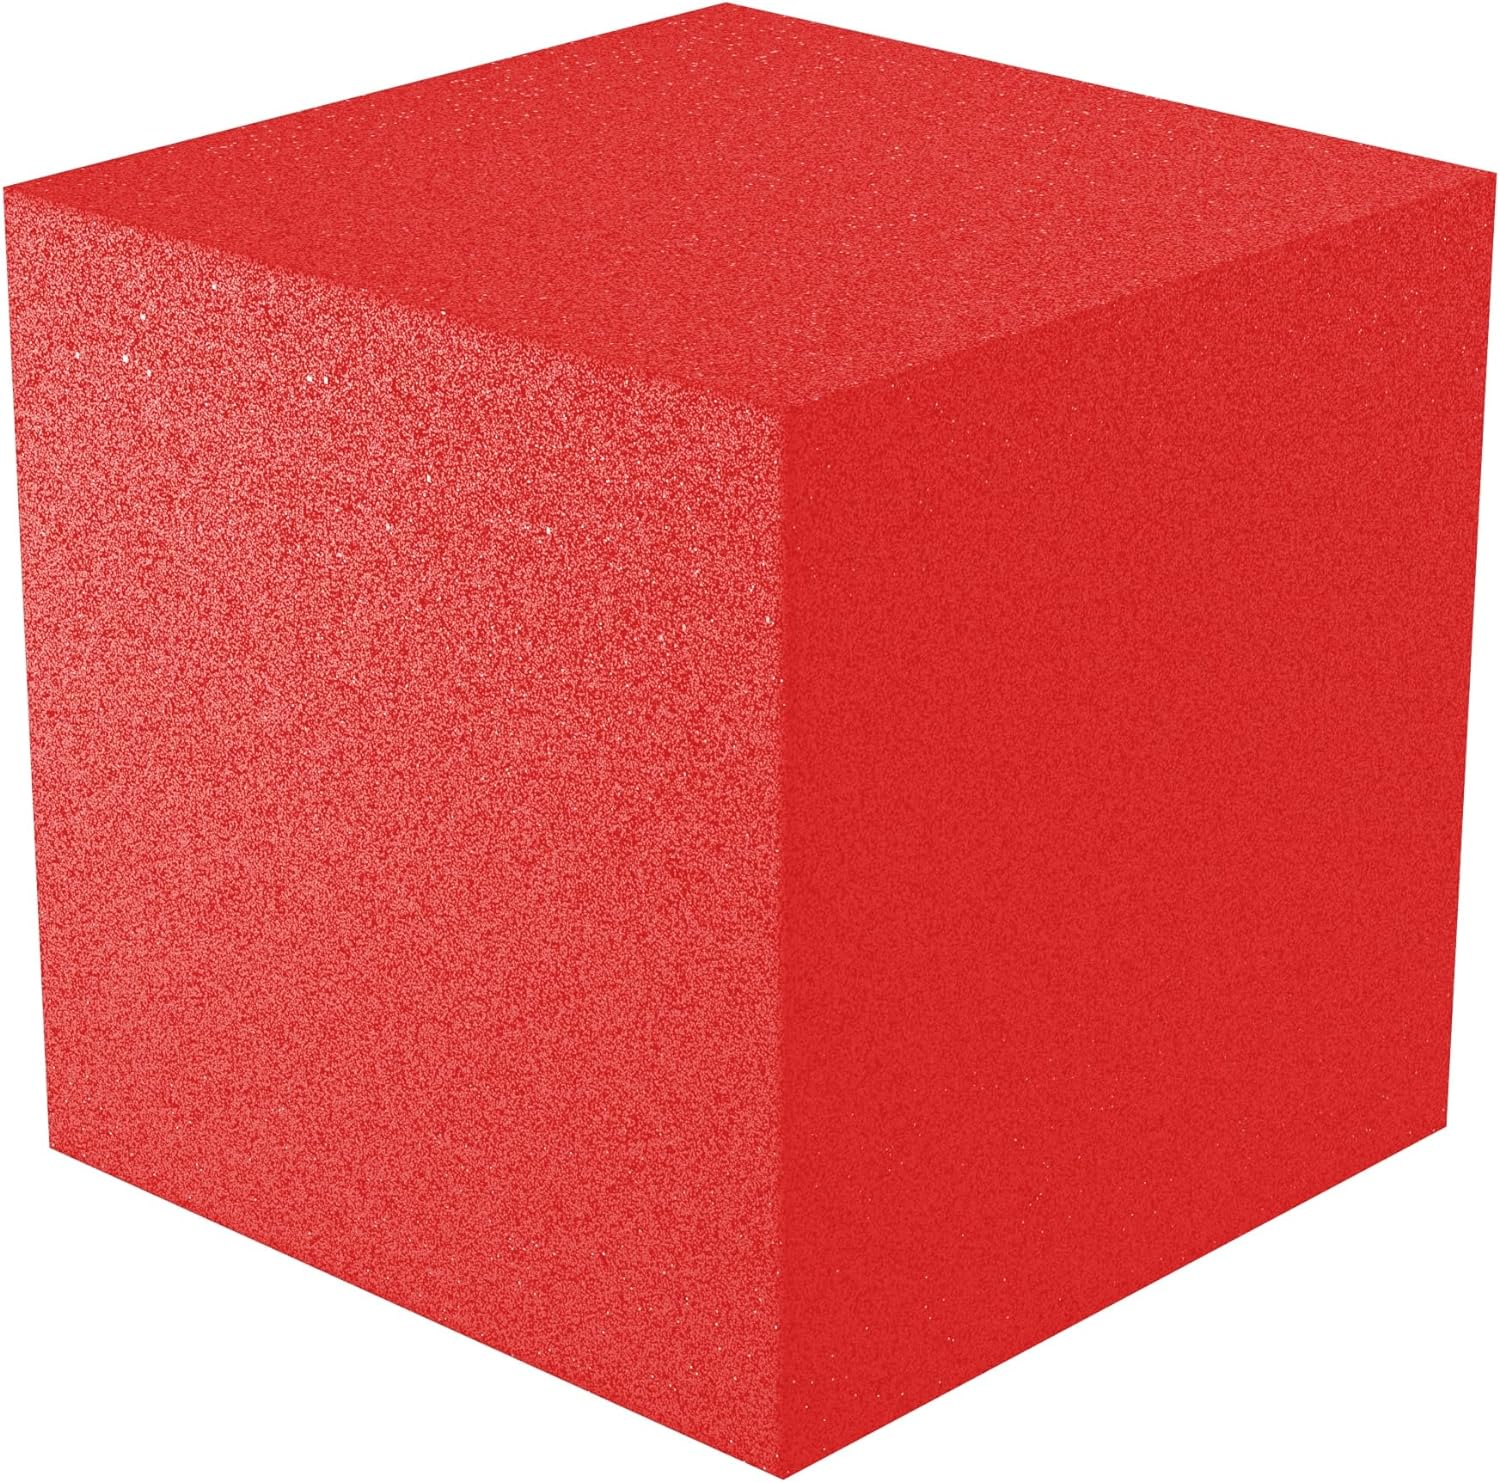 12x12x12 acoustic foam corner block - red foam square